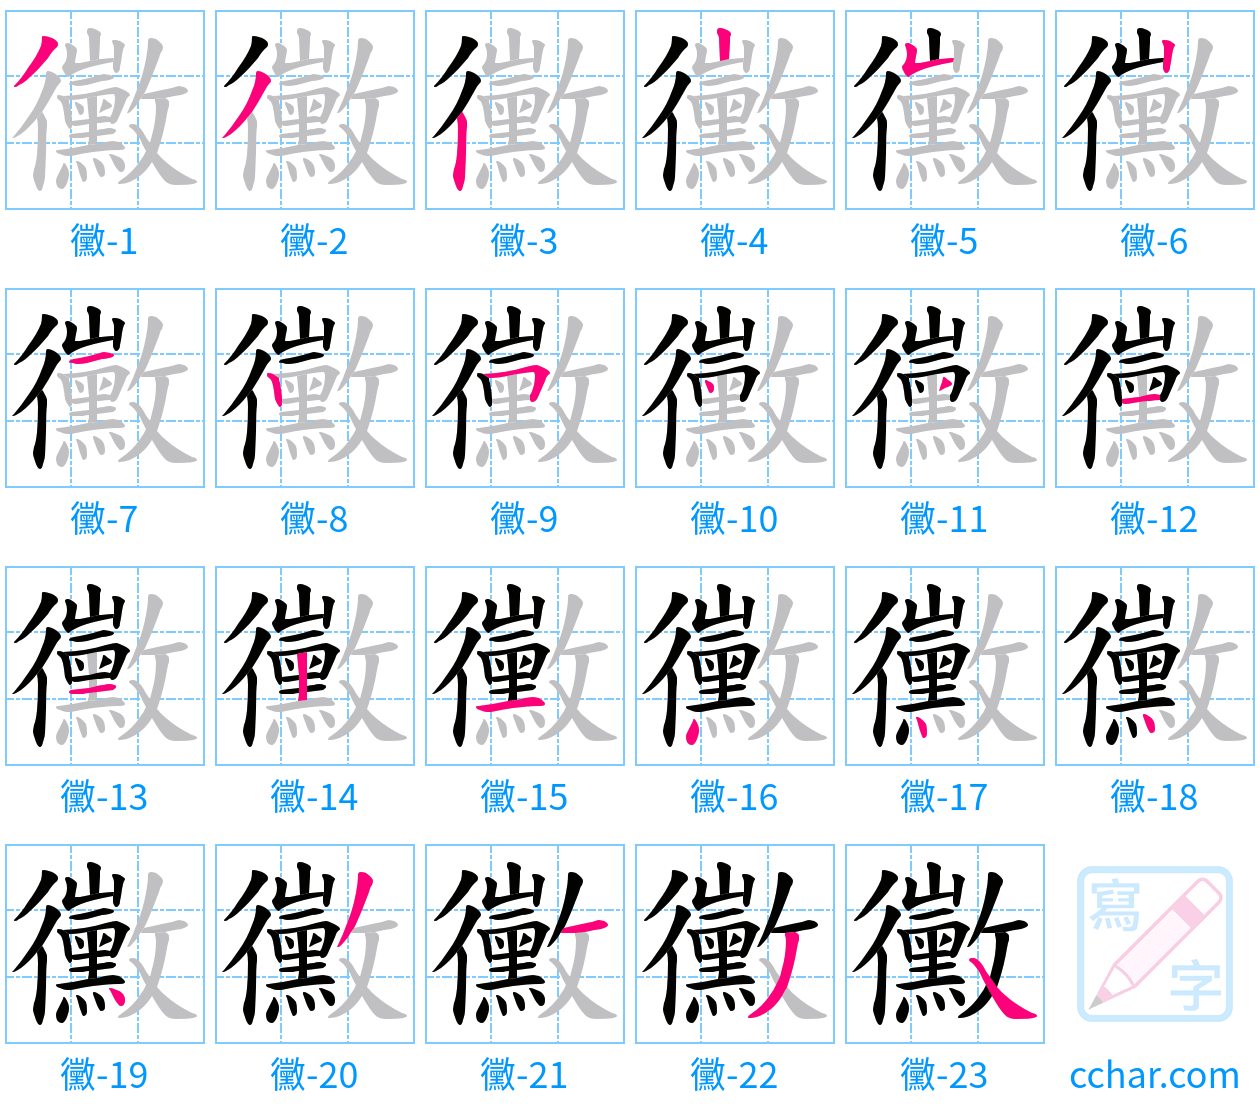 黴 stroke order step-by-step diagram